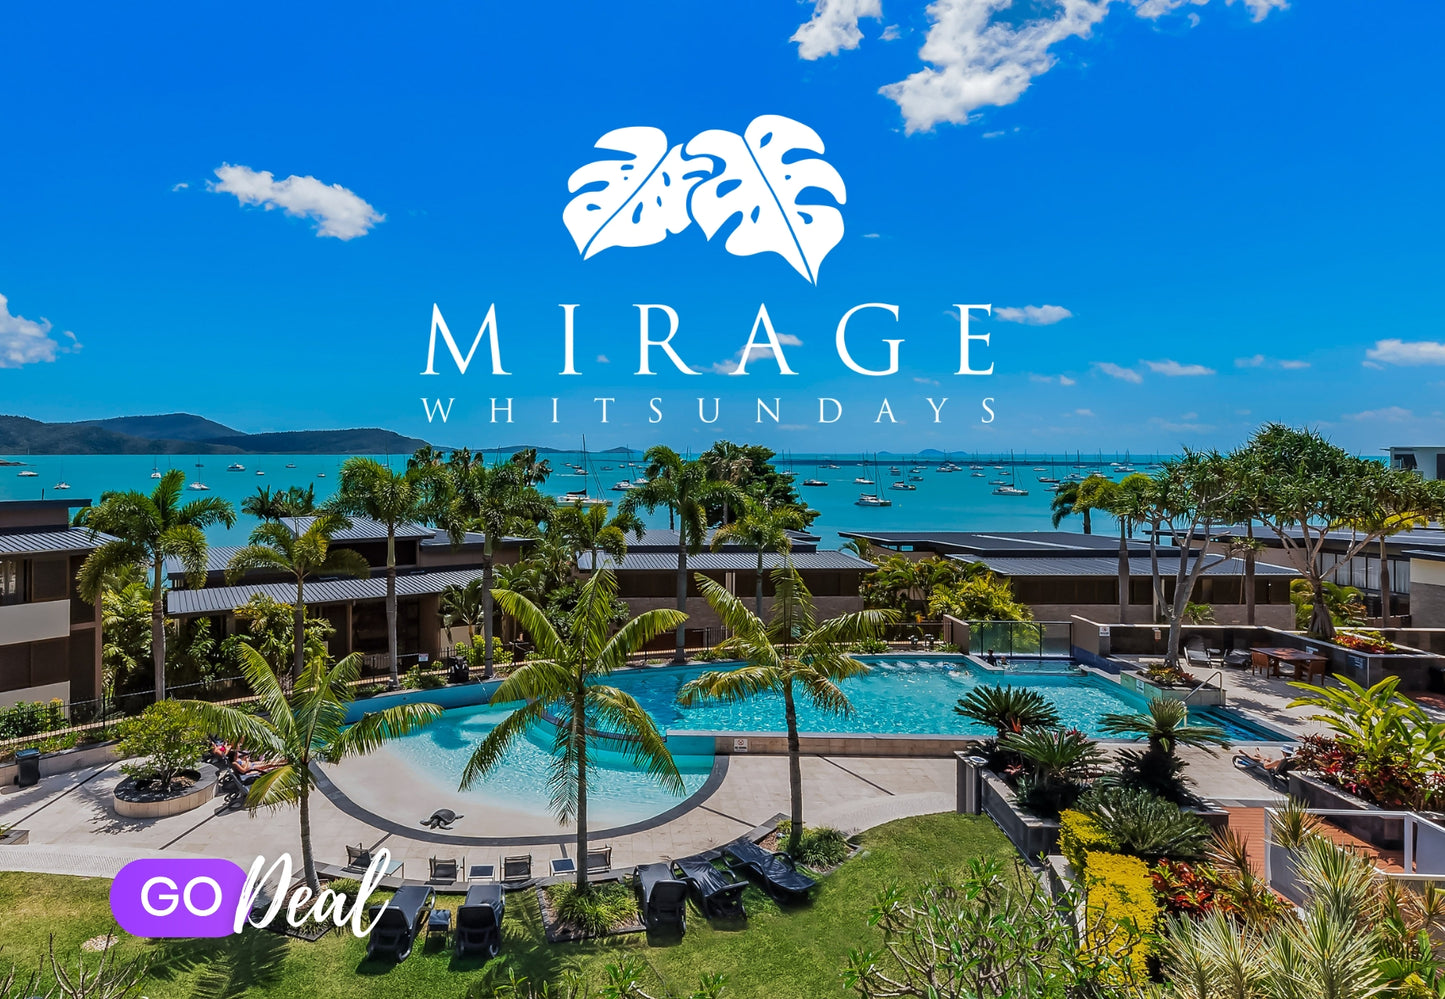 Mirage Whitsundays | GO Deal Voucher | $99 Deposit